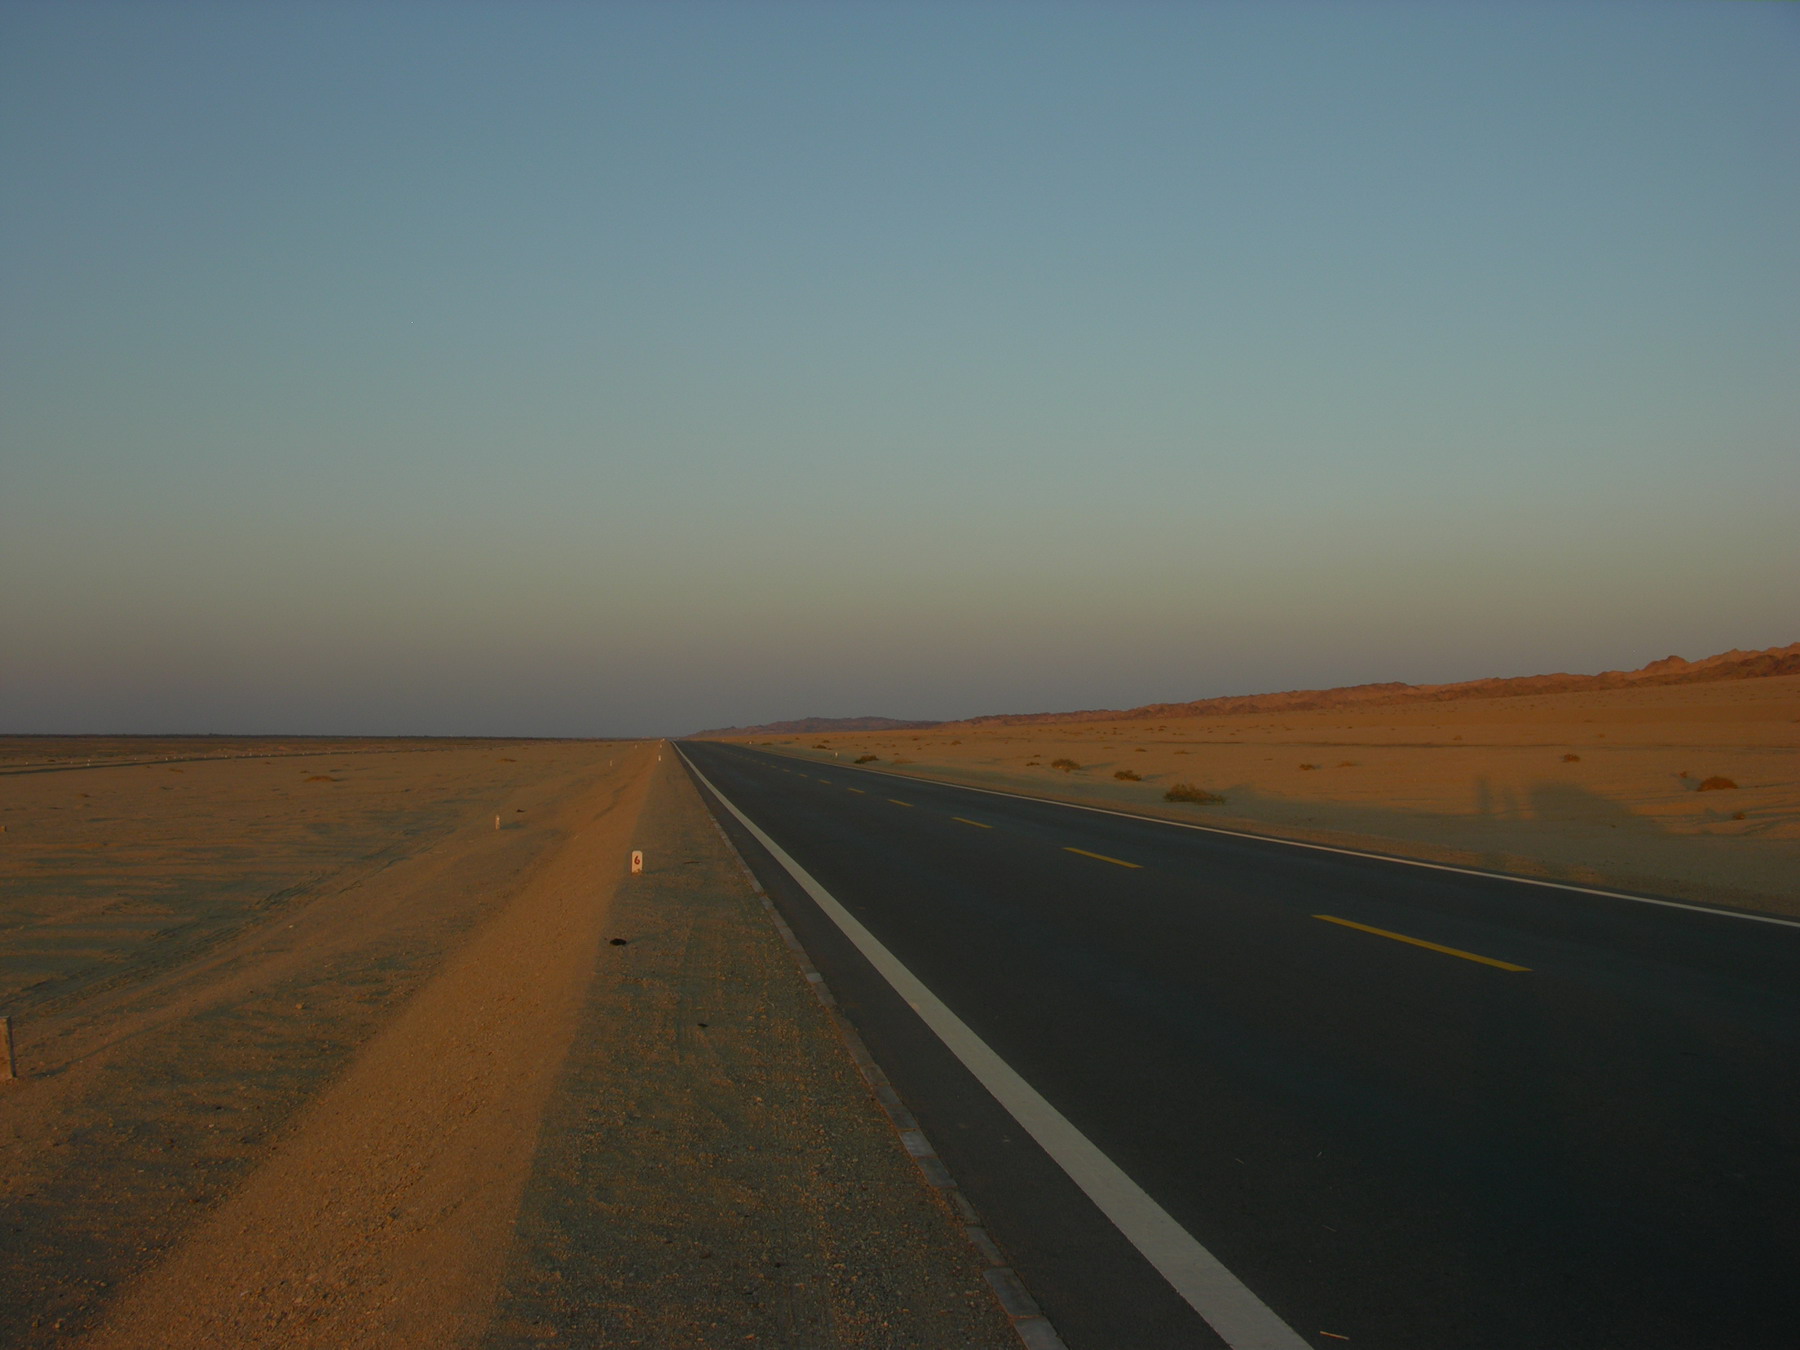 大漠长河丝绸路 两人单车万里行-下篇:横穿柴达木盆地